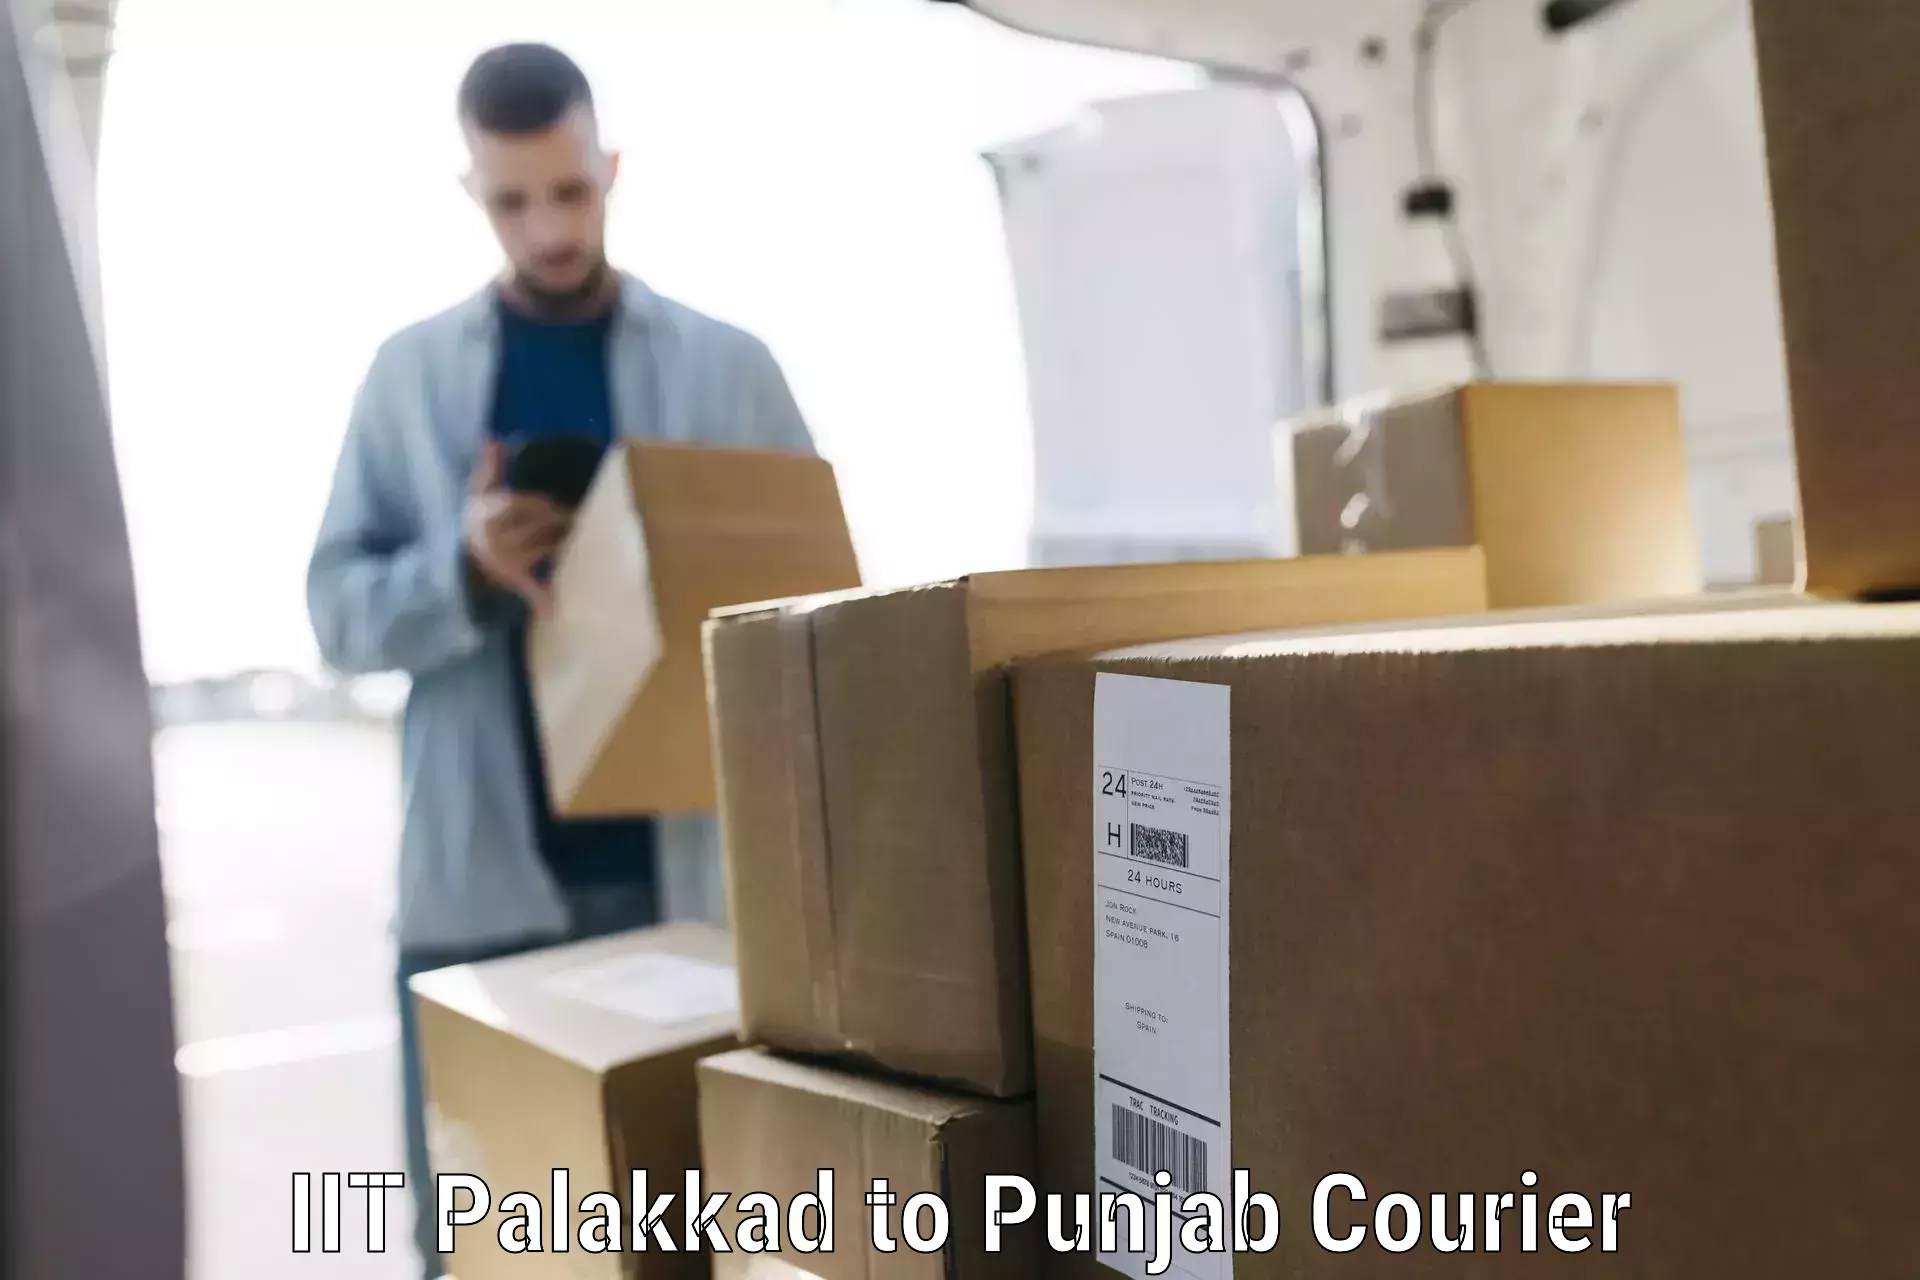 Luggage transport company IIT Palakkad to Malerkotla